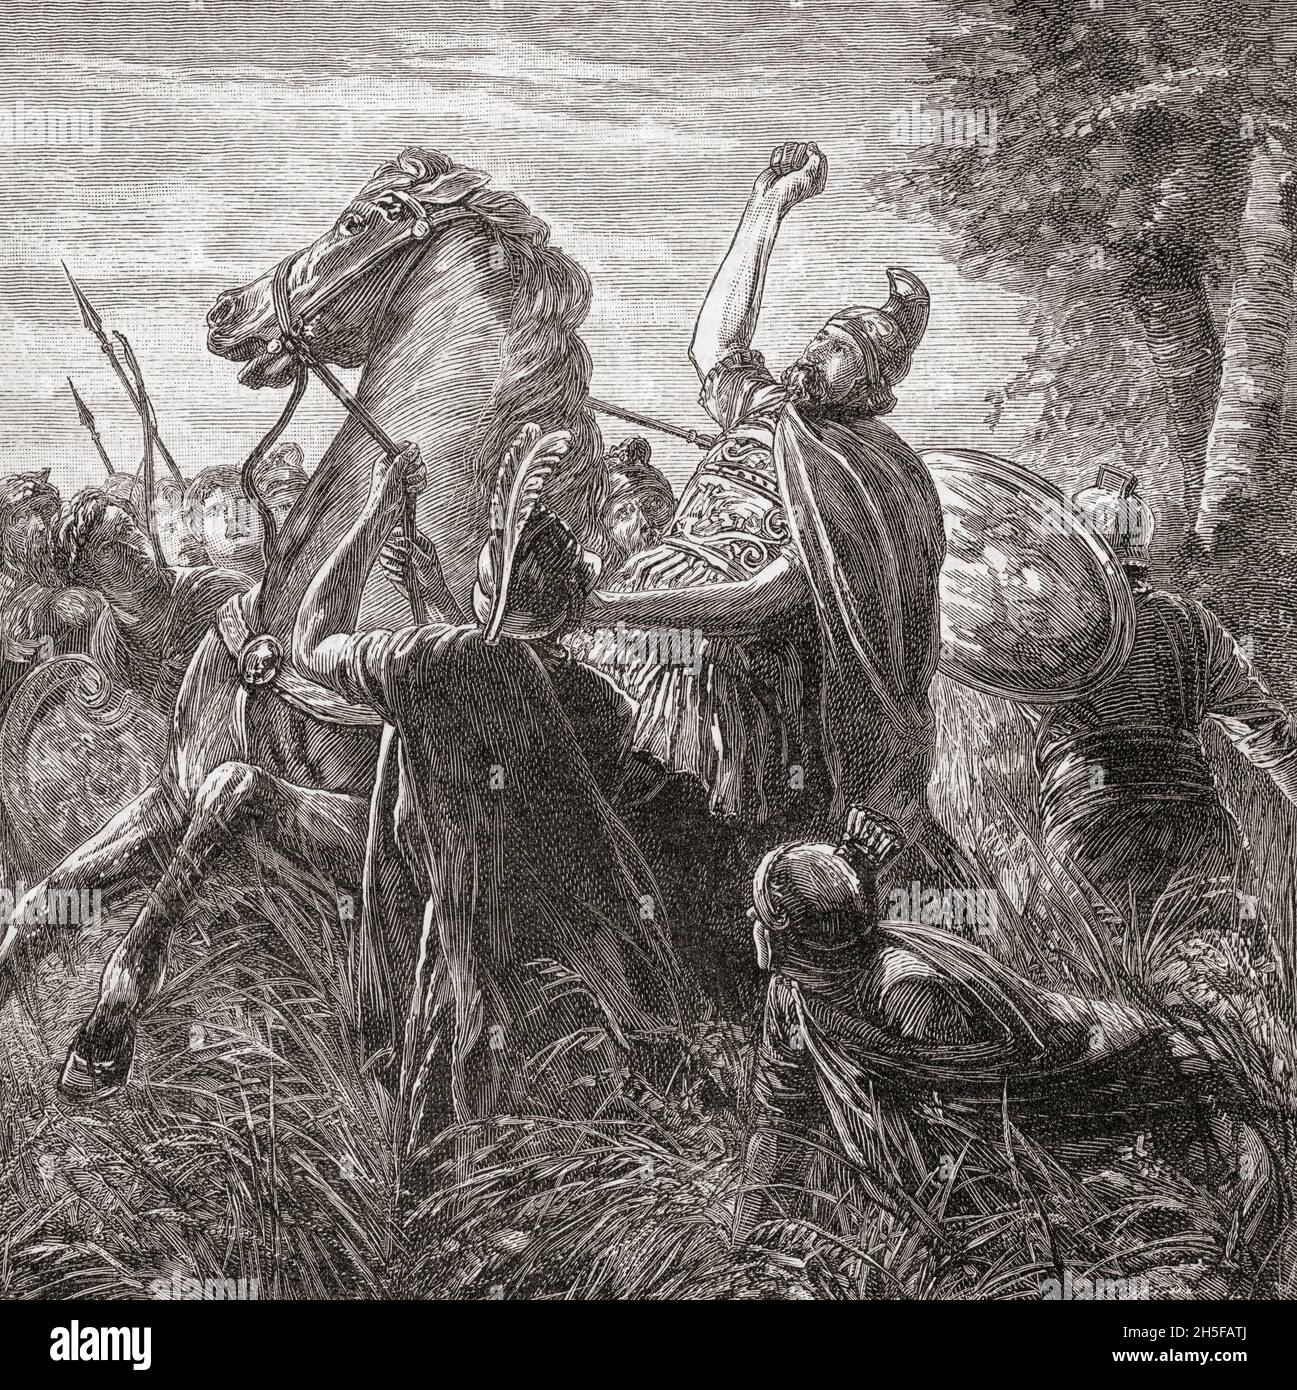 Tod von Crassus in der Schlacht von Carrhae, 53 v. Chr. Marcus Licinius Crassus, 115 – 53 v. Chr. Römischer General und Staatsmann. Aus Cassells Illustrated Universal History, veröffentlicht 1883. Stockfoto